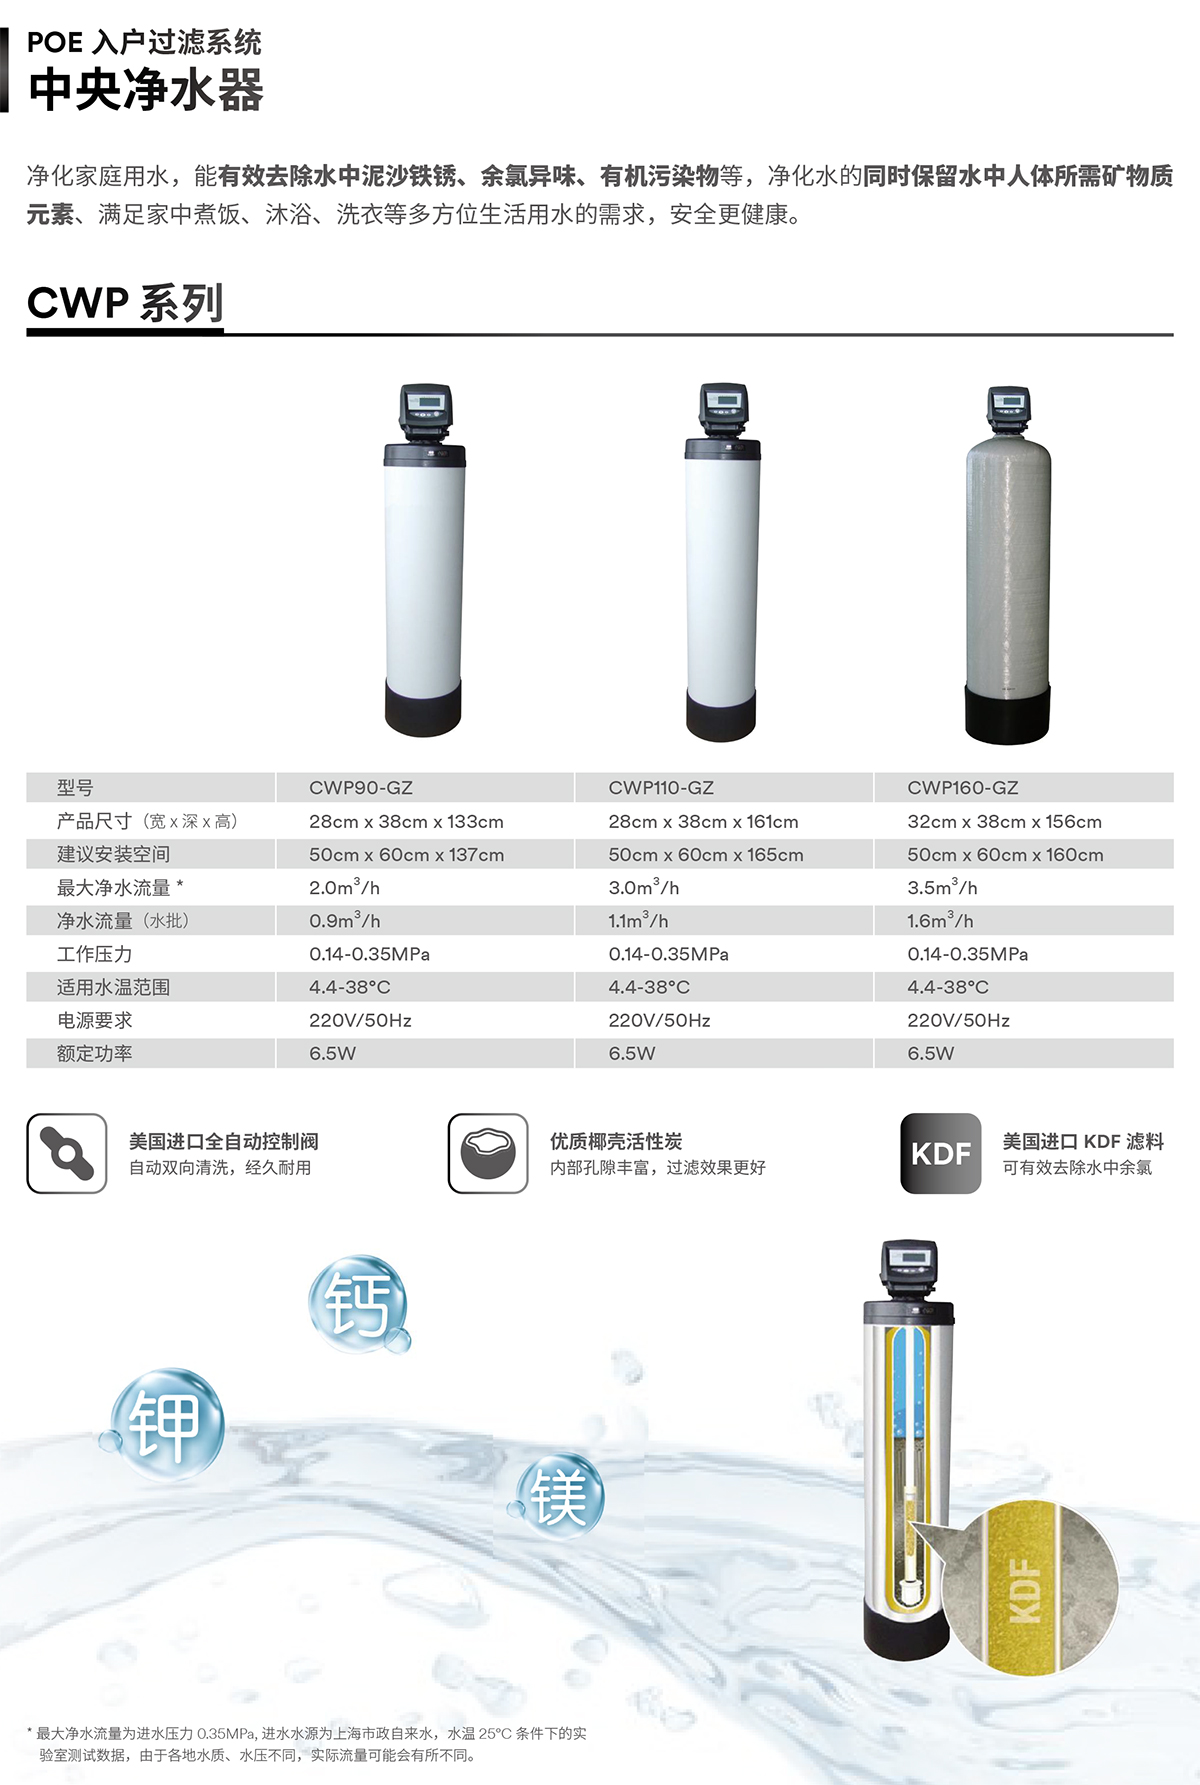 中央净水器 CWP系列